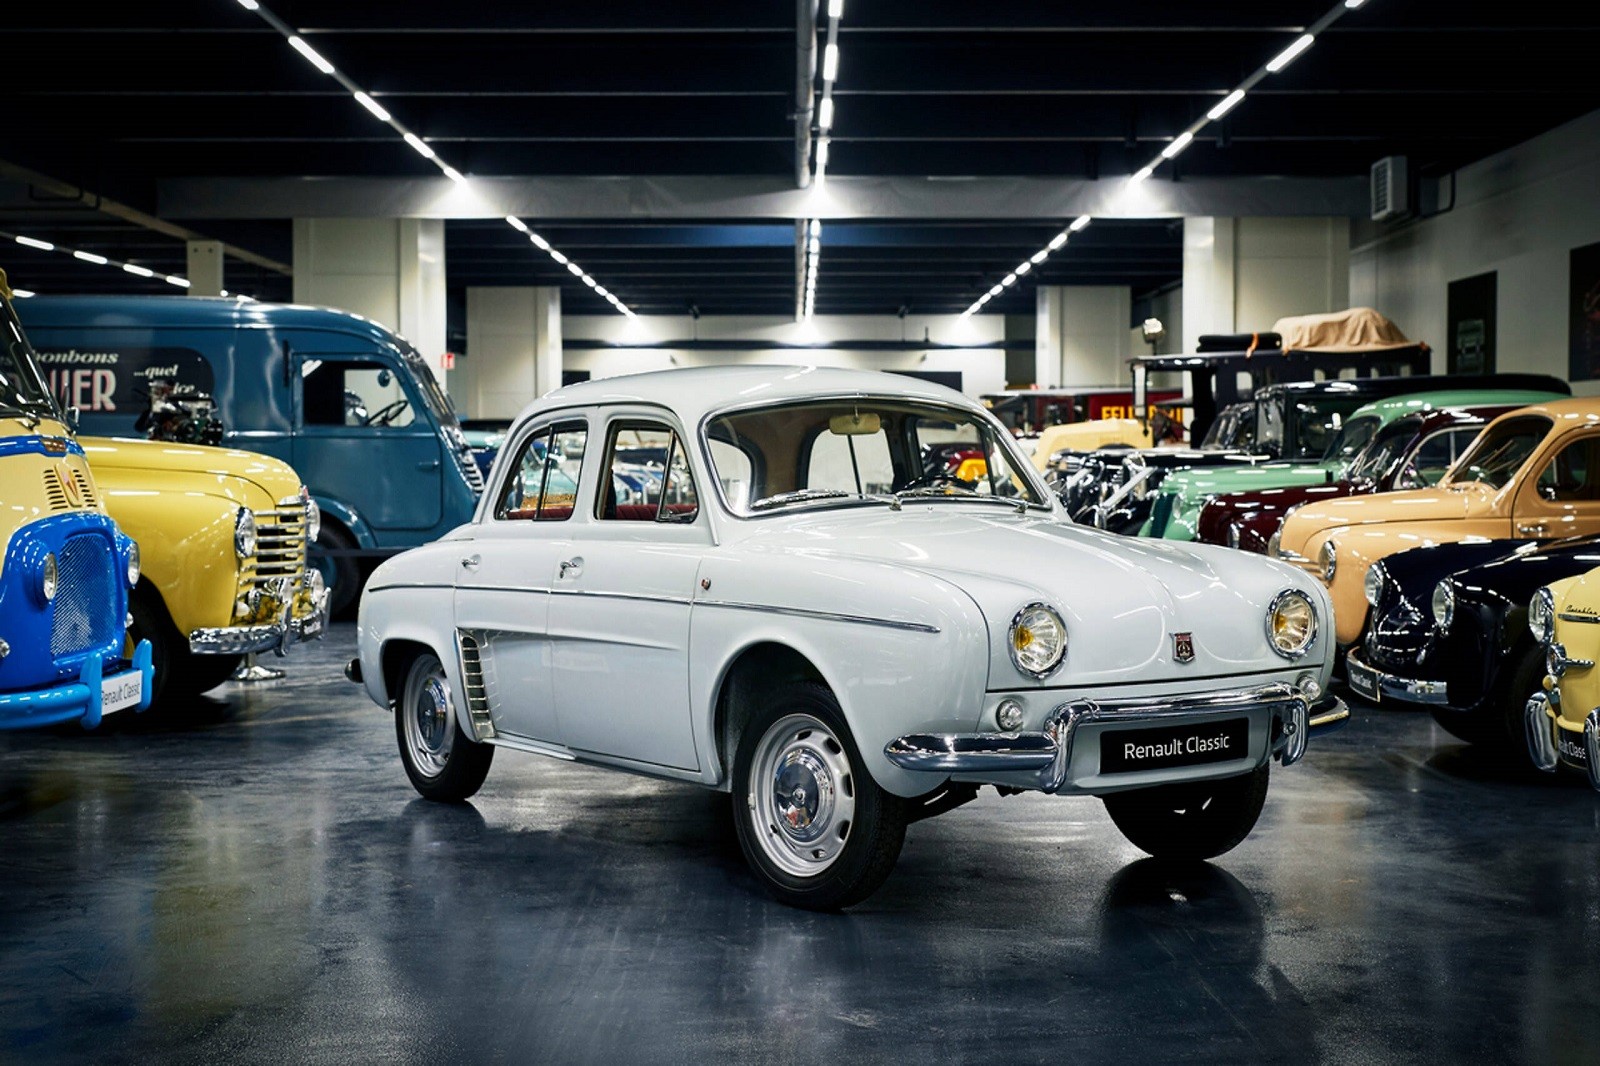 Renault pogon u Cléonu slavi nevjerojatan uspijeh, proizveli 100 milijuna motora i mjenjača! 25